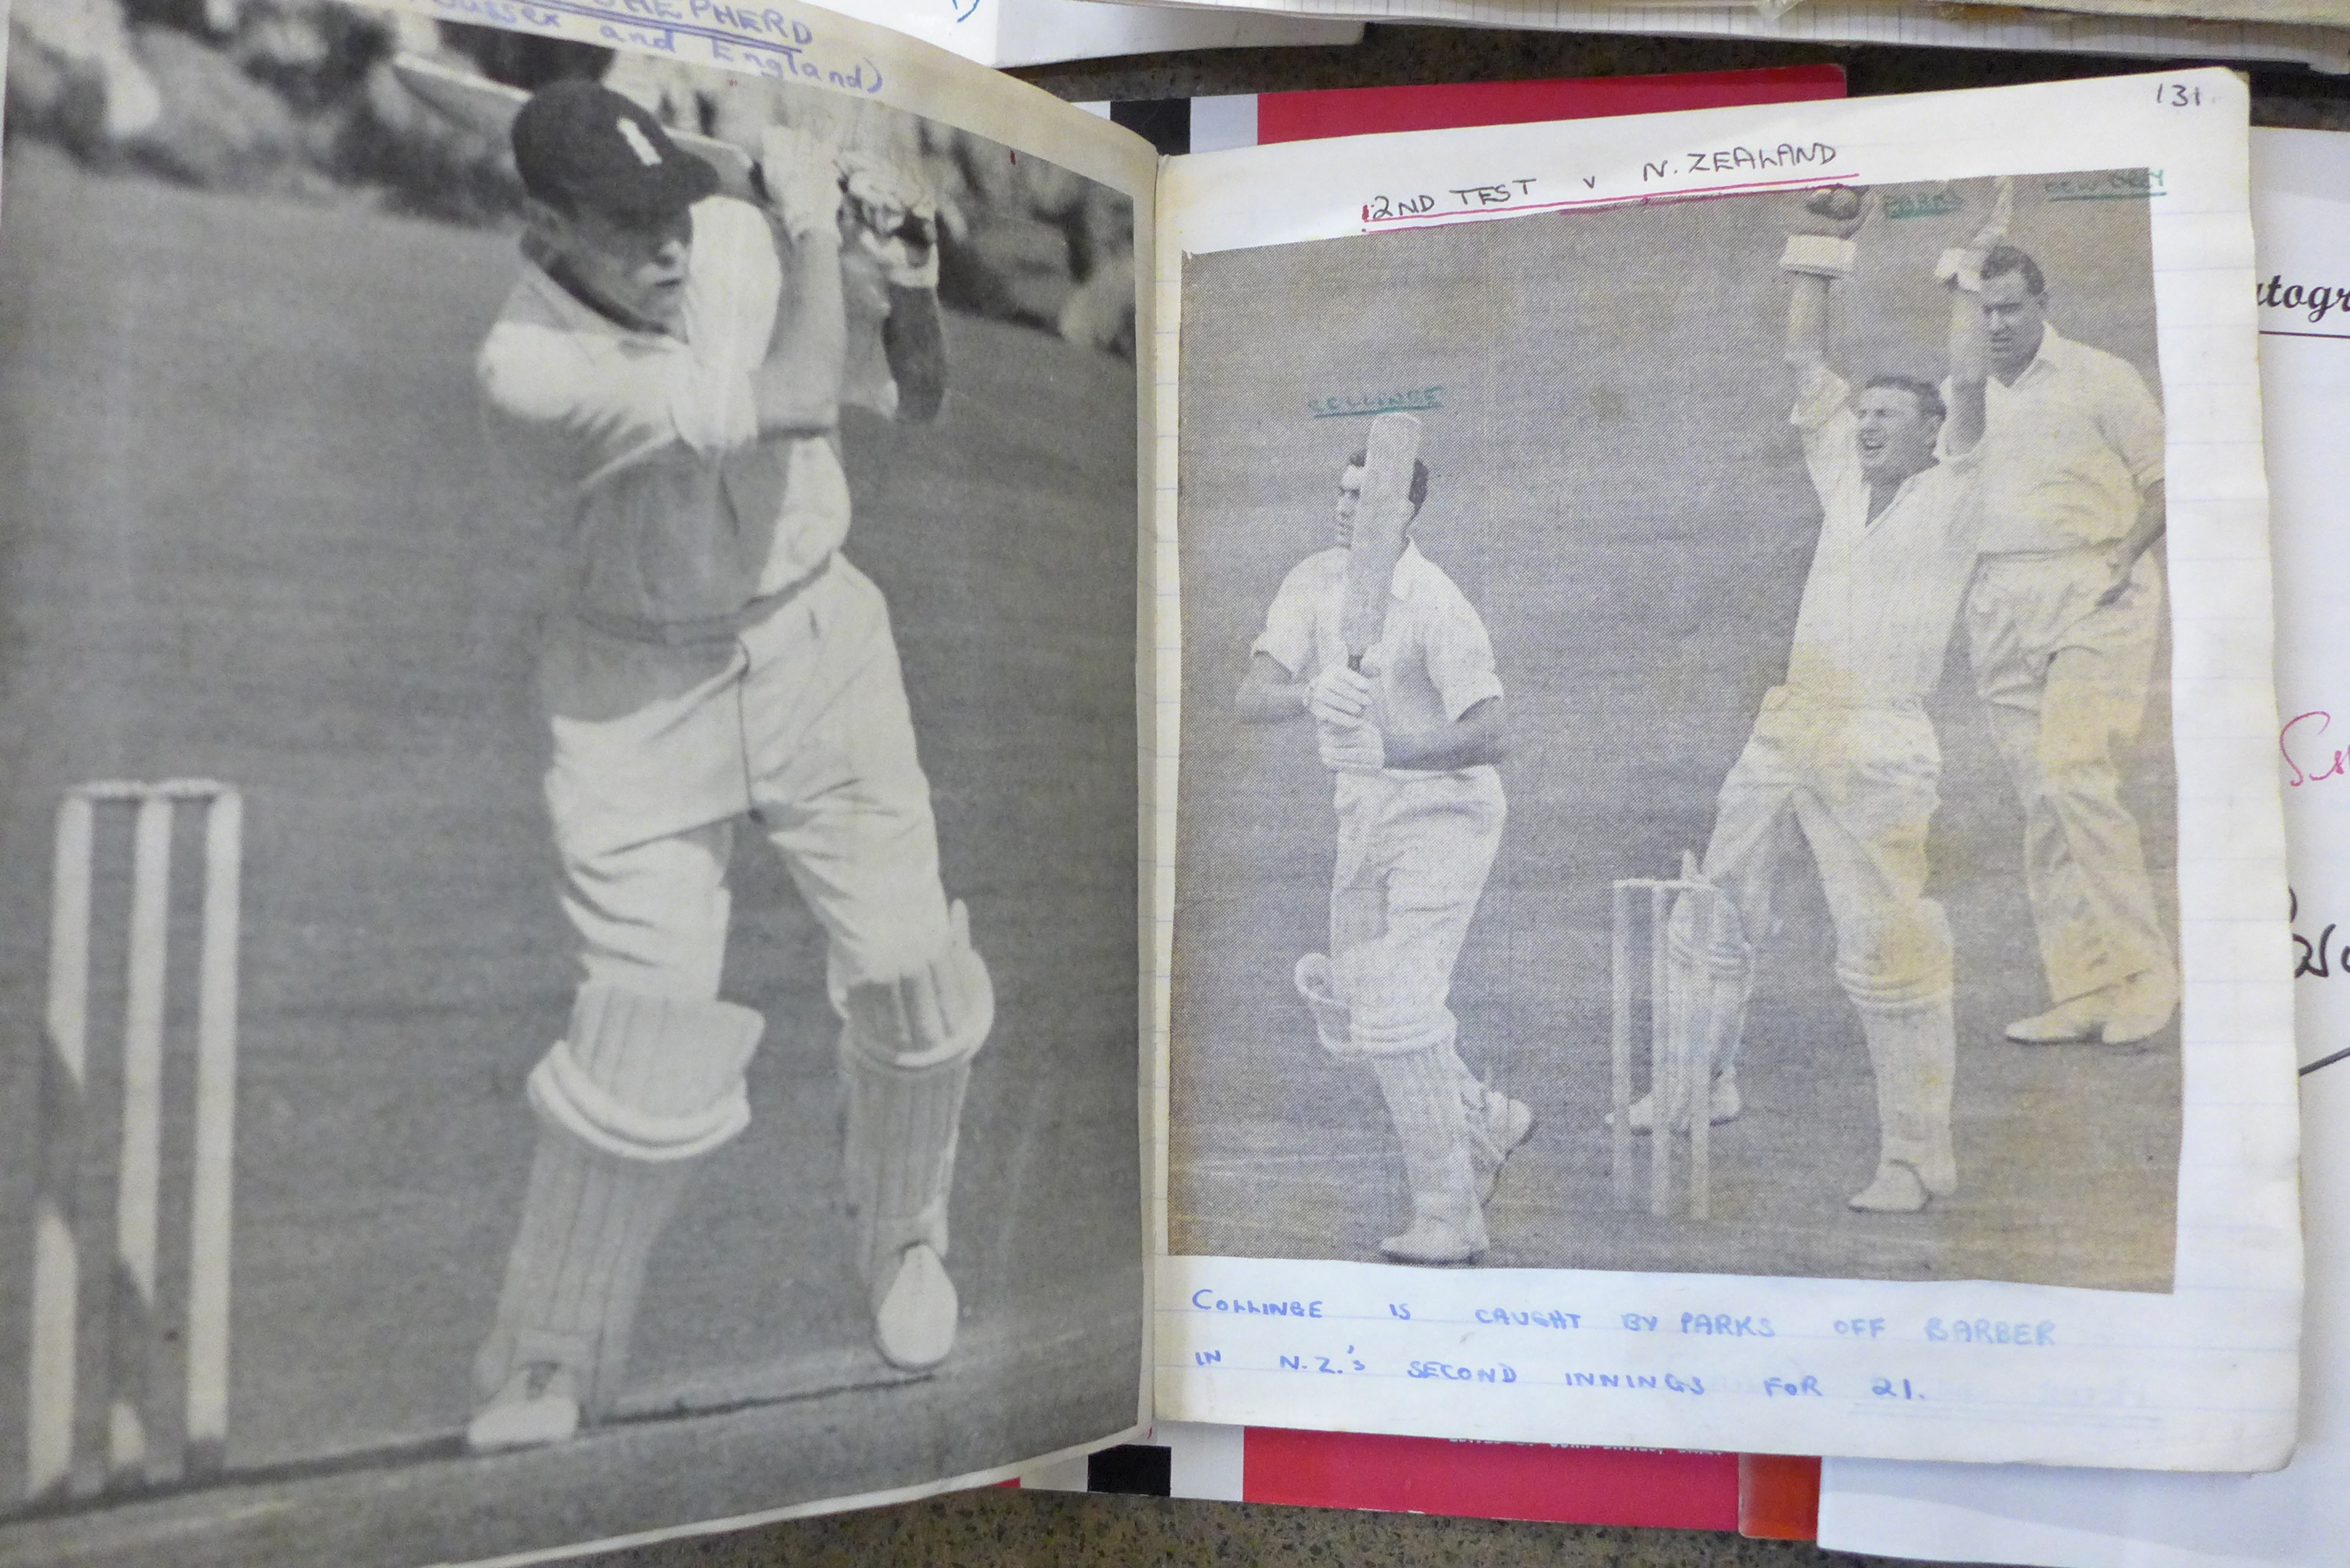 Cricket ephemera and scrap albums with autographs including Larwood, Boycott, Subba Row - Image 4 of 19